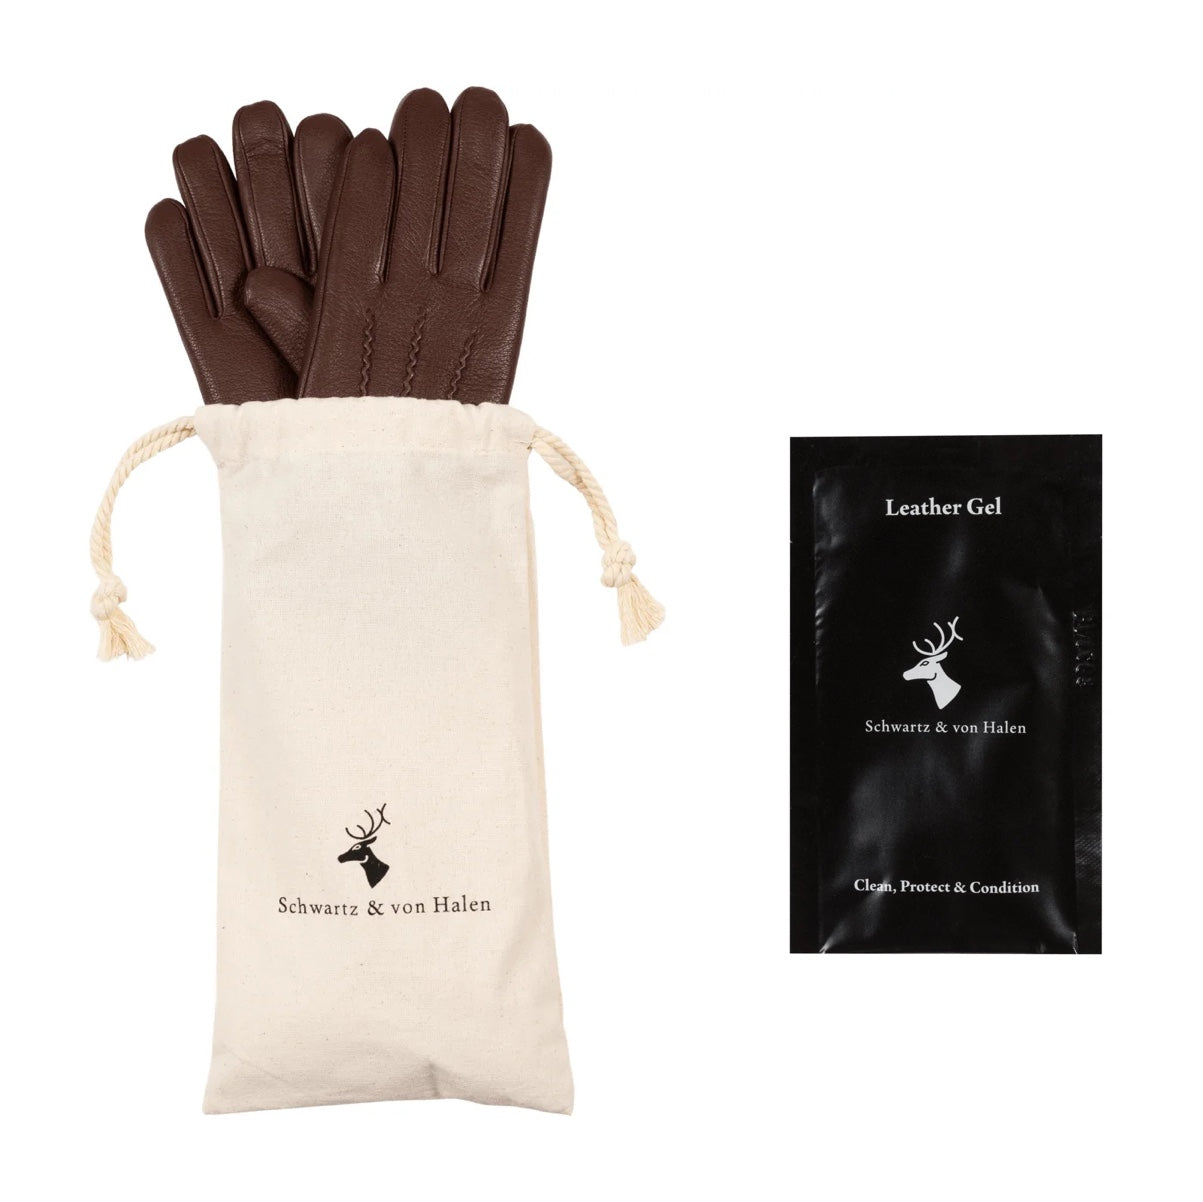 Schwartz & von Halen® - Premium Leather Gloves - Storage bag & leather gel